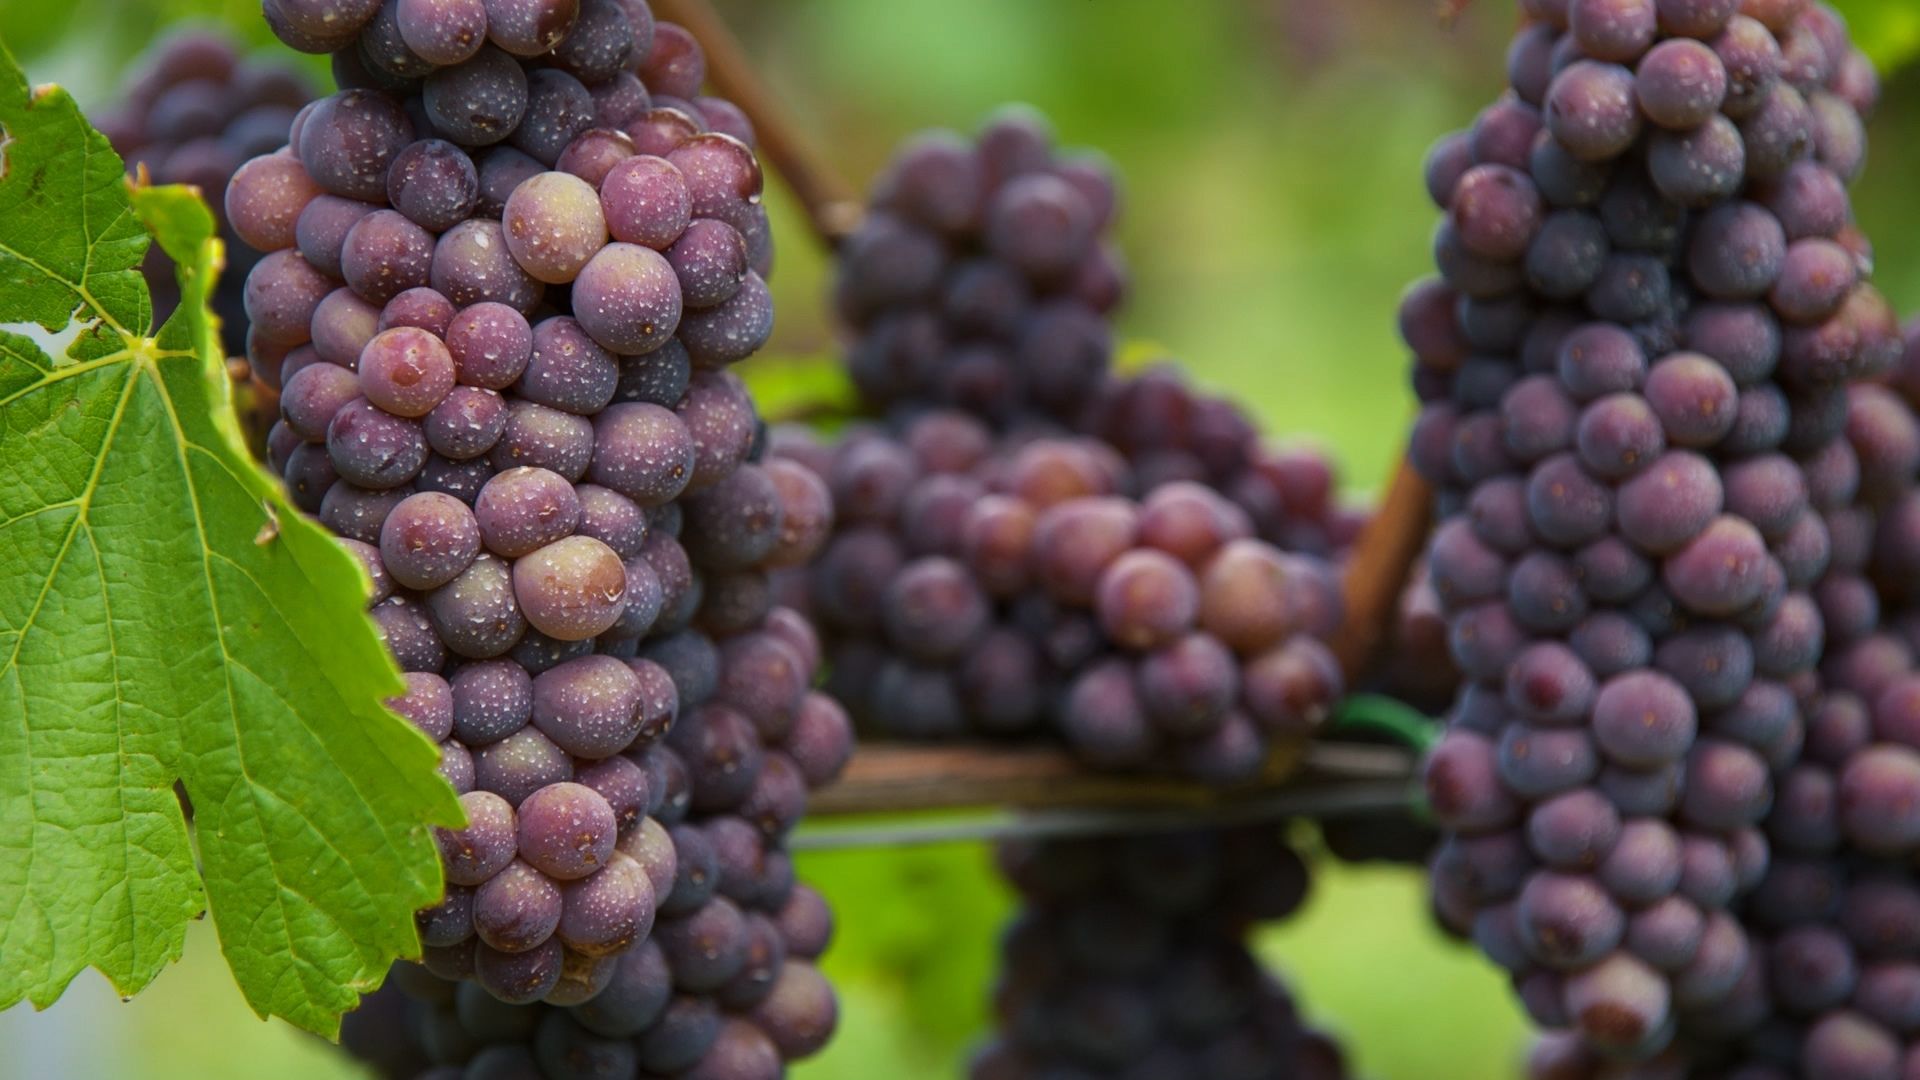 Pinot Grigio grape variety